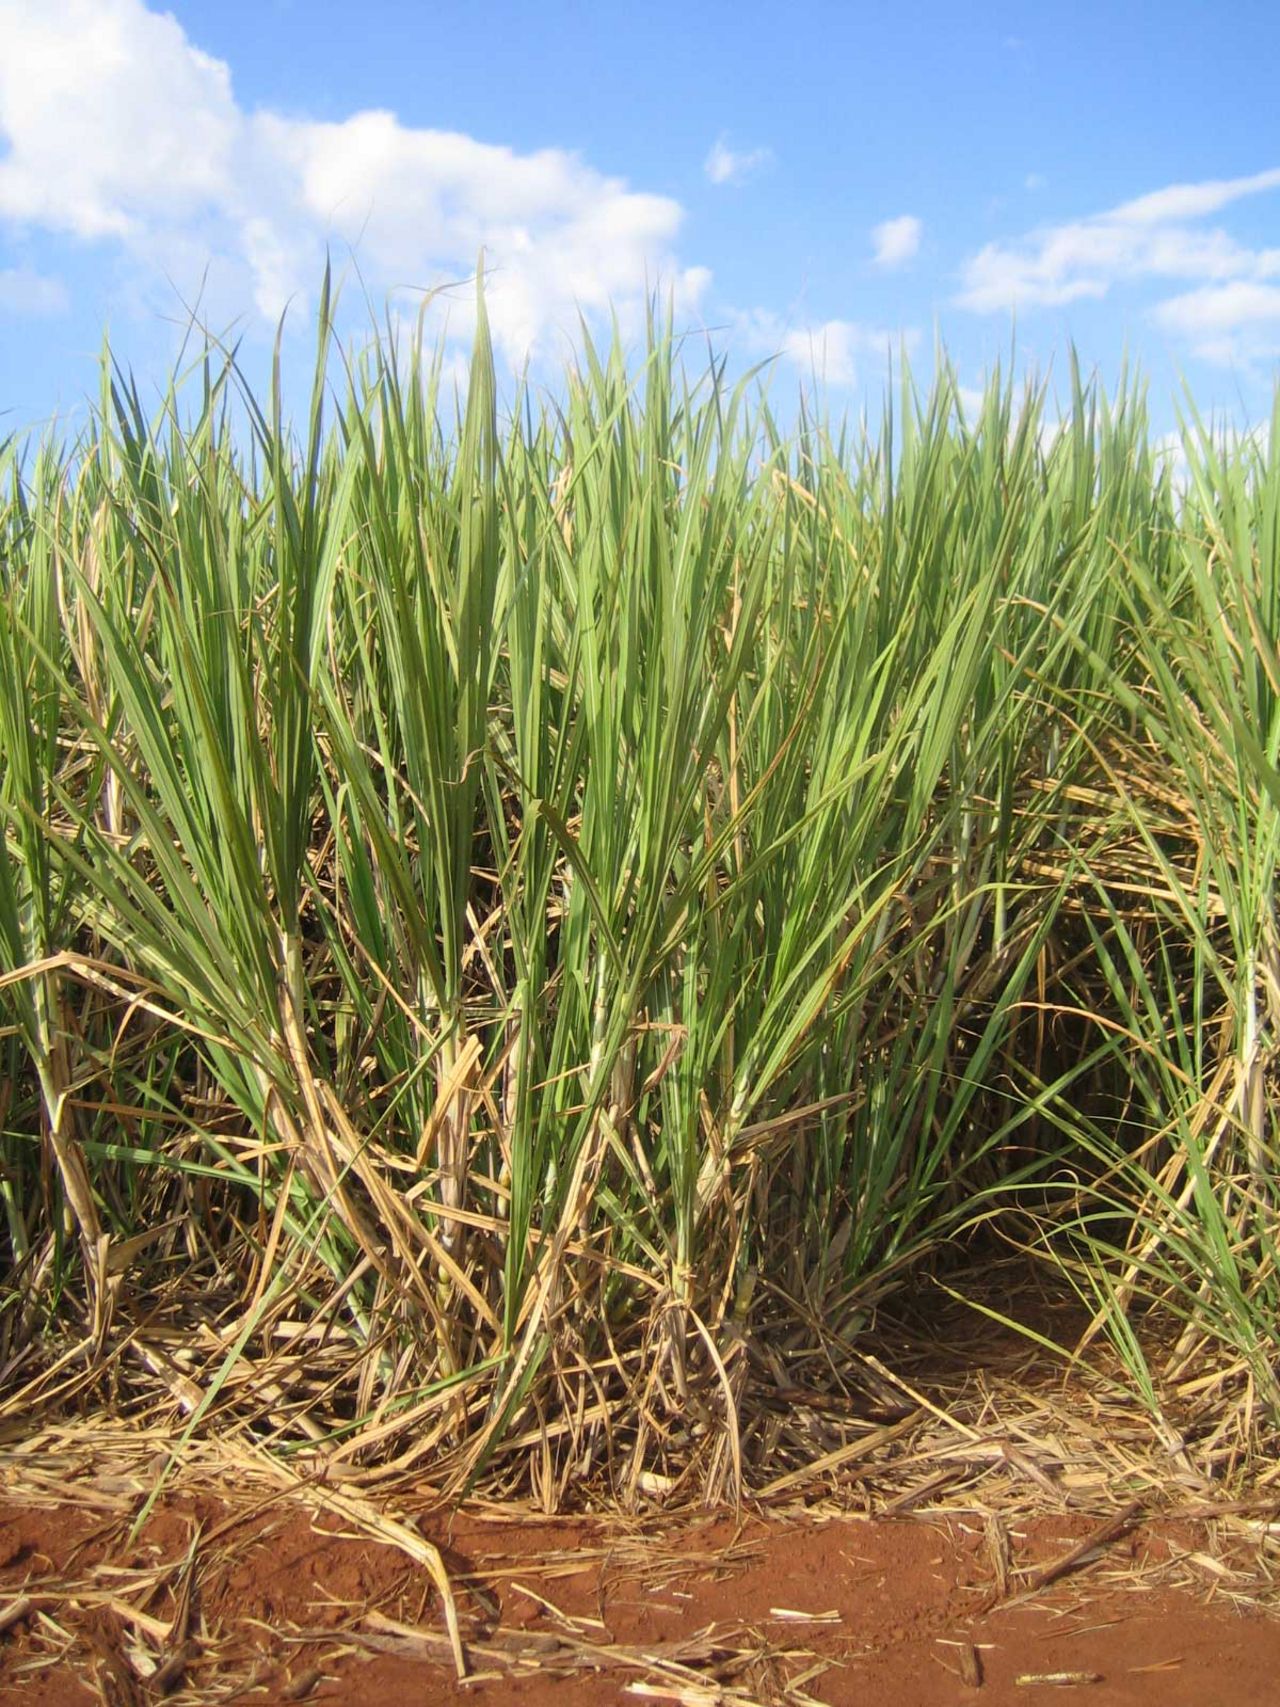 Sugar cane field in Brazil